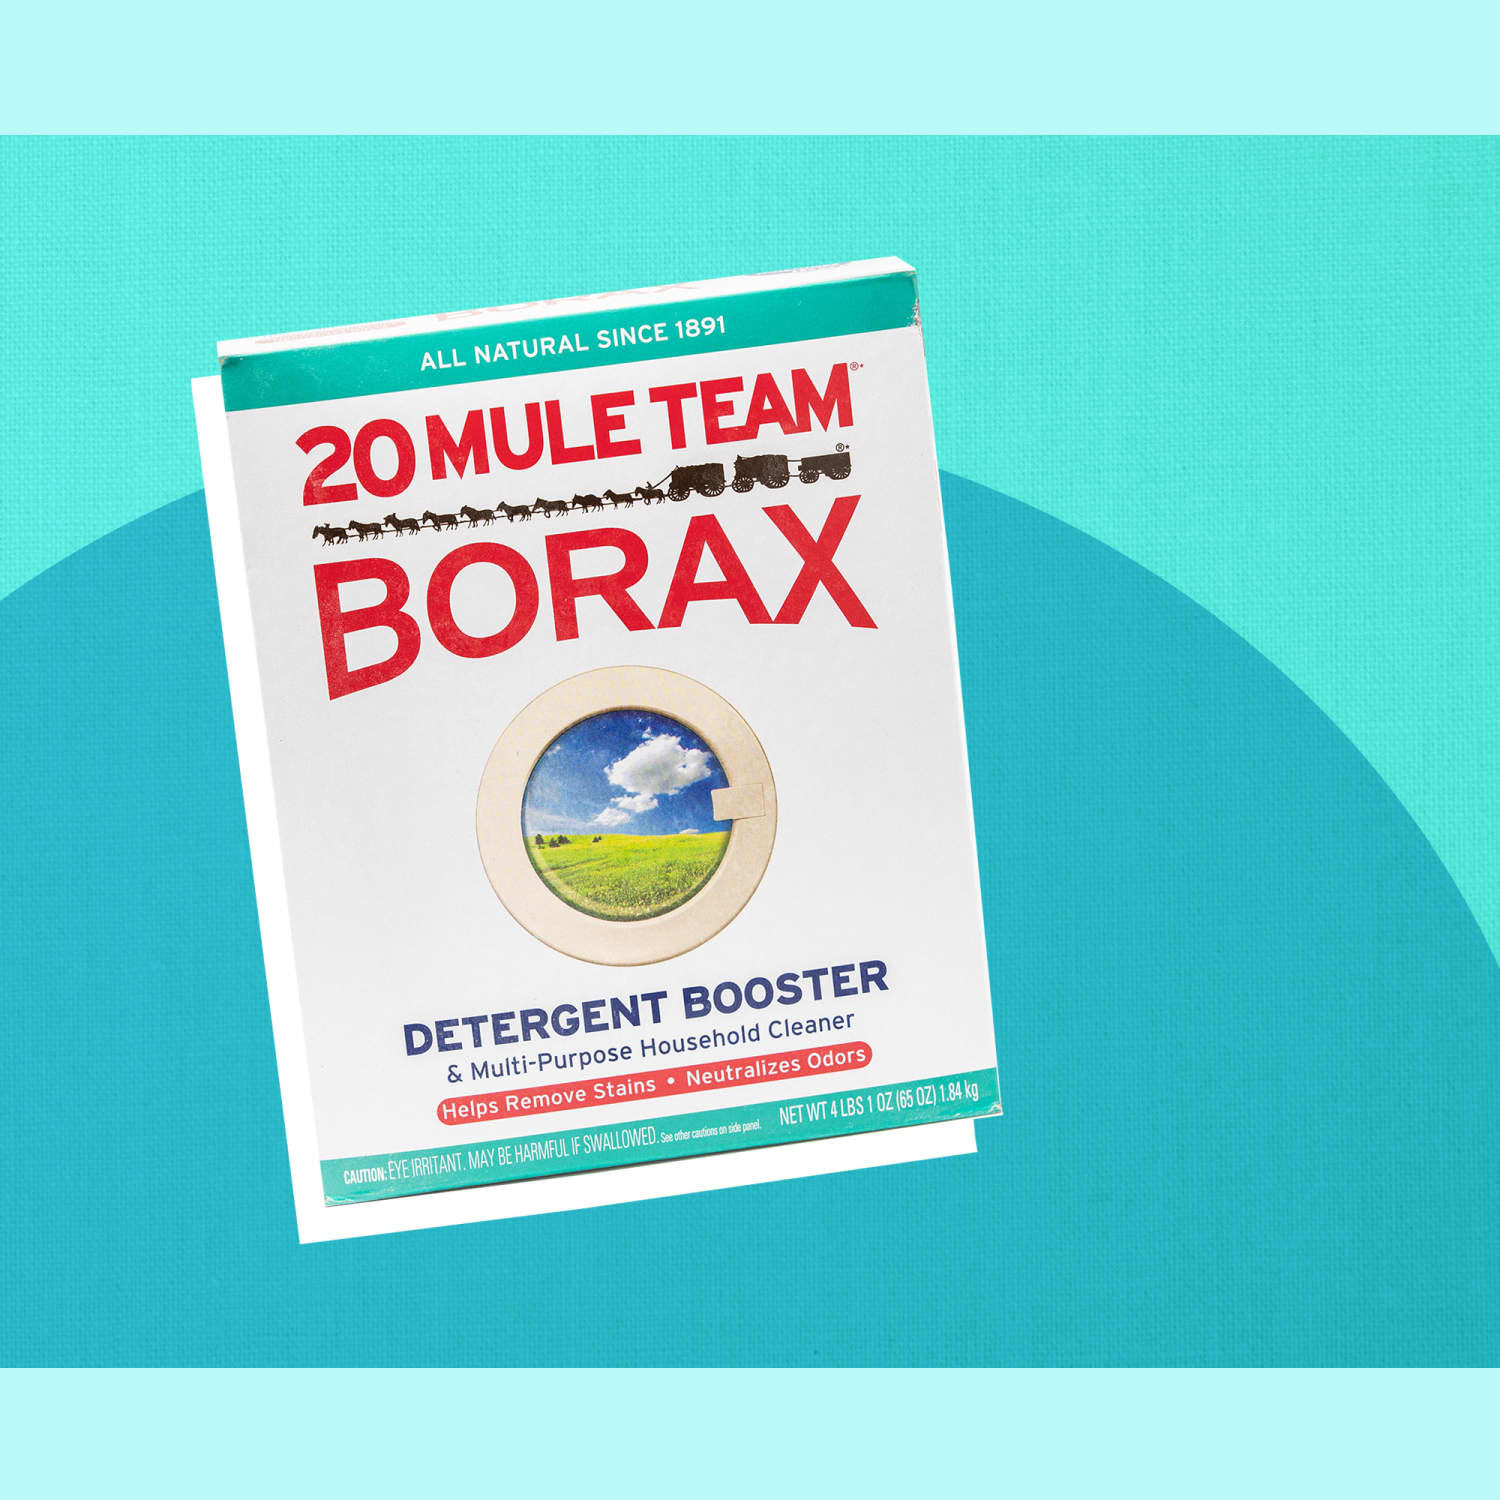 Is Borax Harmful or Helpful?